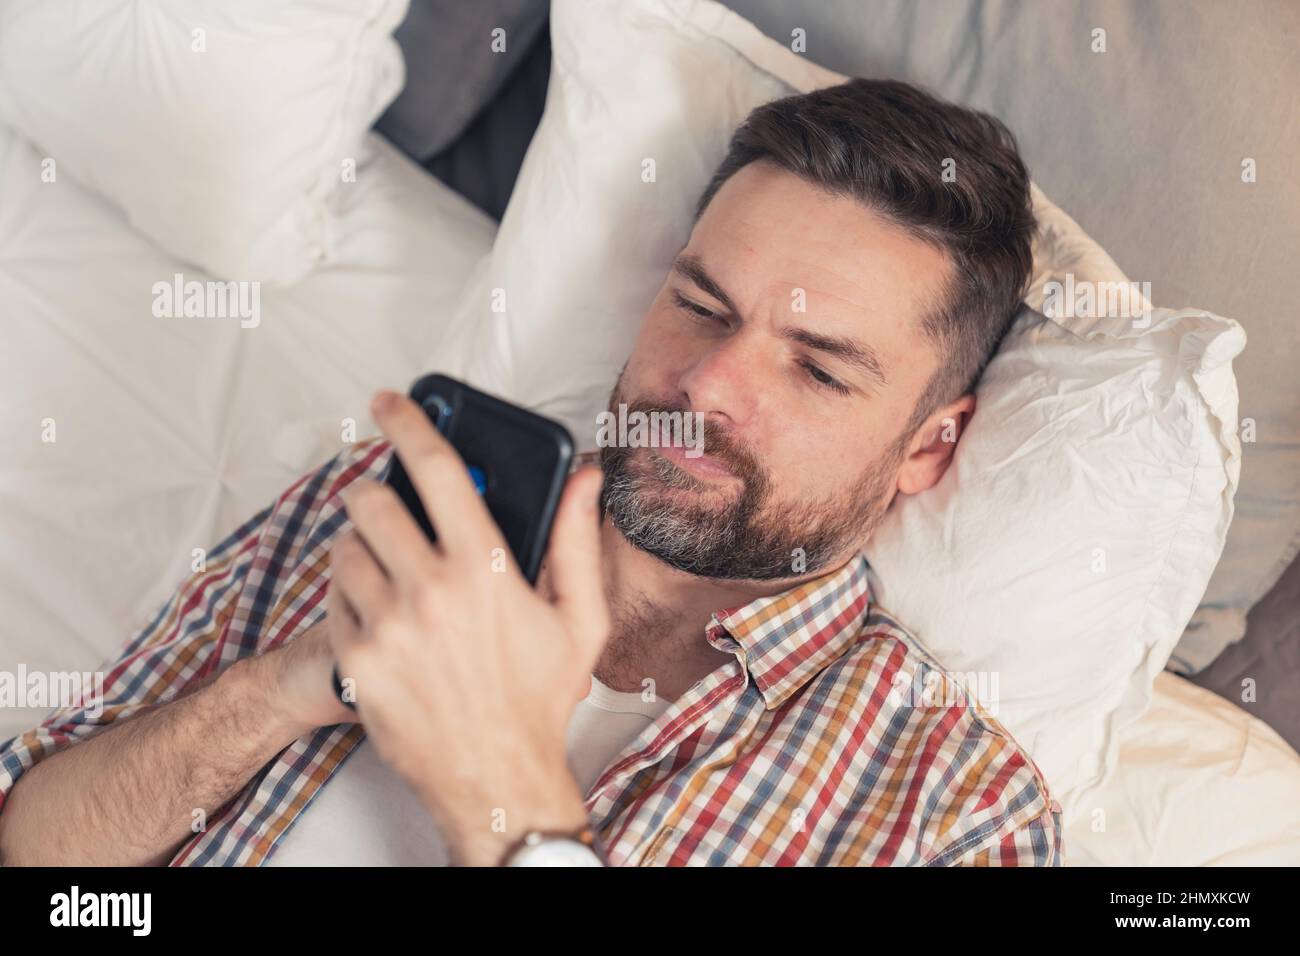 une lad caucasienne avec une barbe complète lisant un article sérieux en ligne en utilisant son nouveau smartphone noir. Photo de haute qualité Banque D'Images